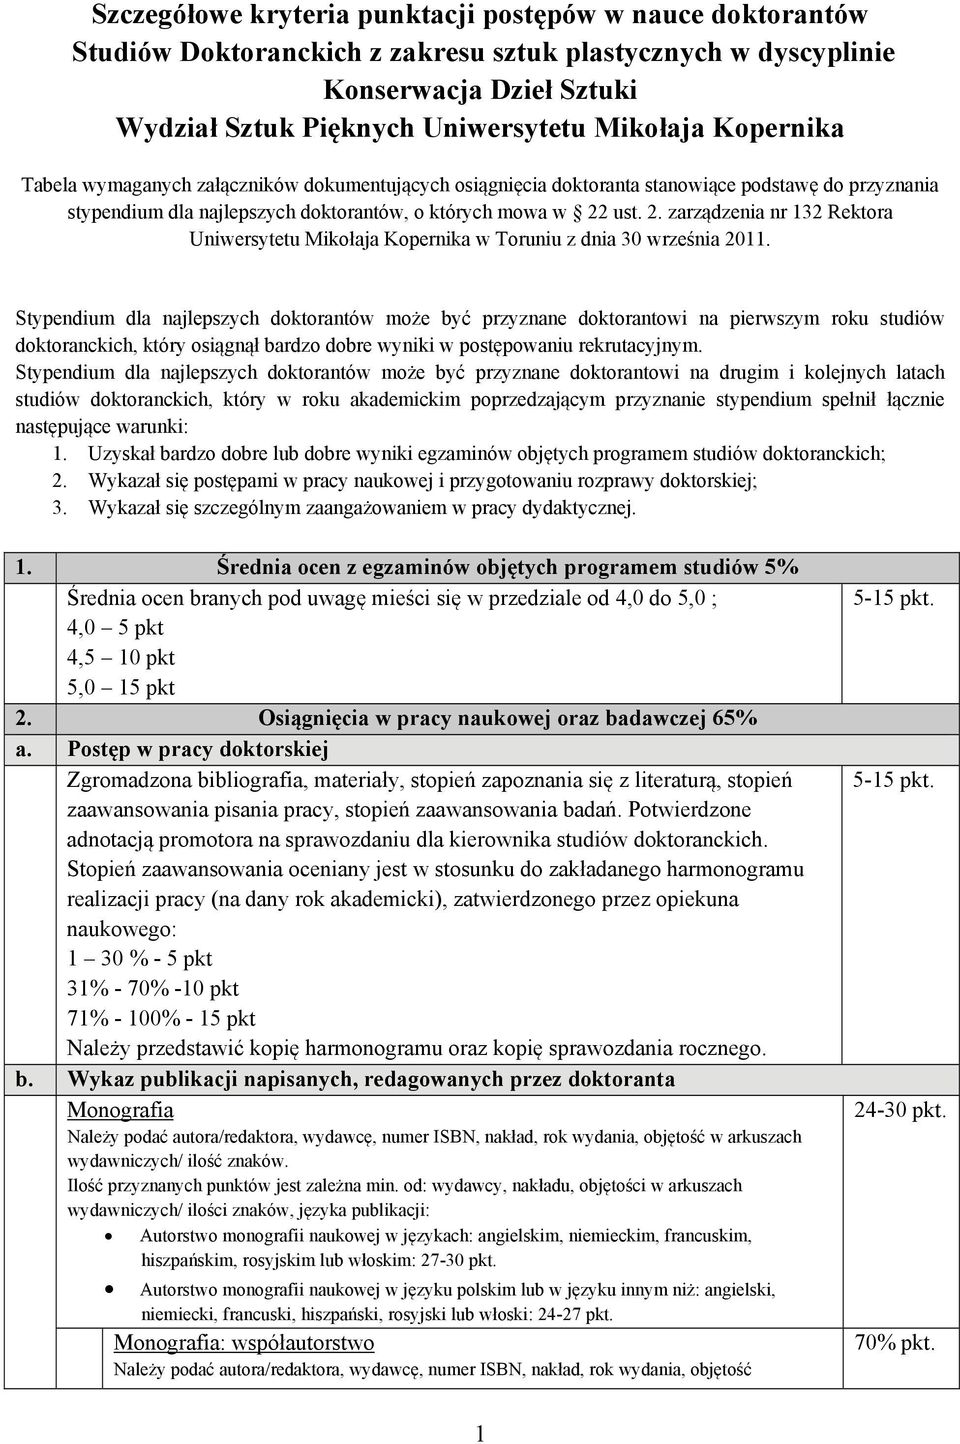 ust. 2. zarządzenia nr 132 Rektora Uniwersytetu Mikołaja Kopernika w Toruniu z dnia 30 września 2011.